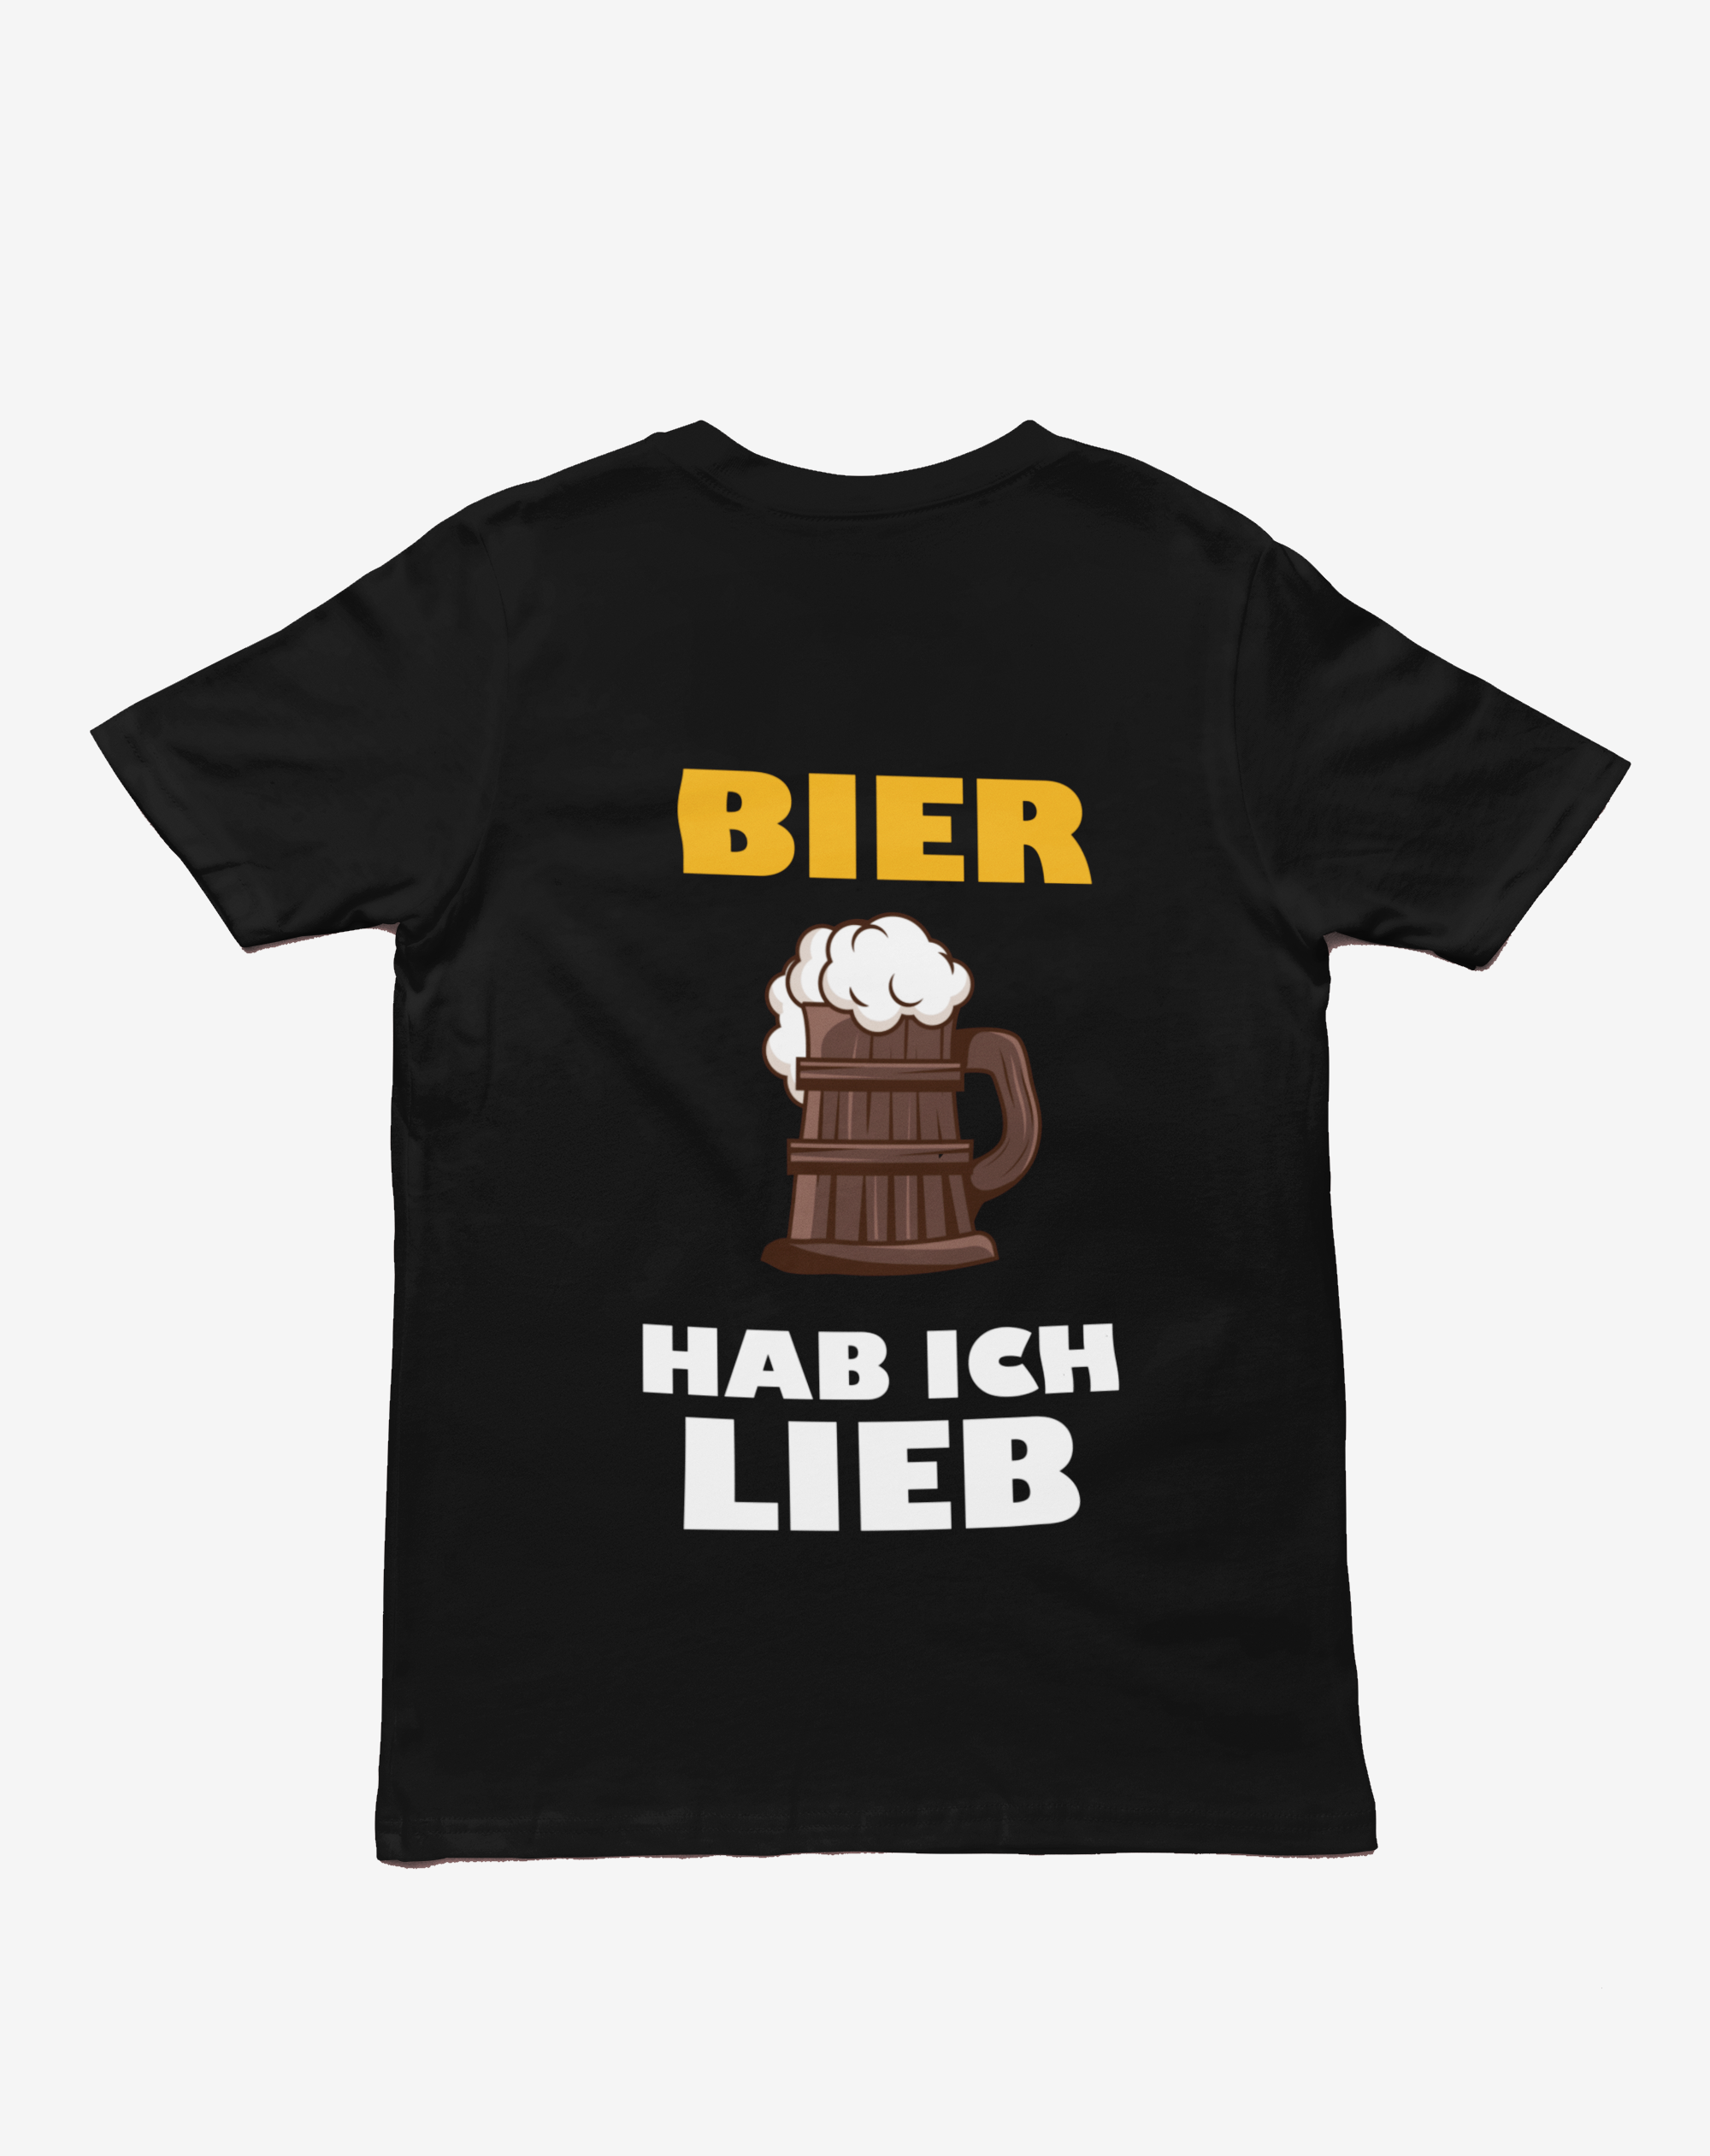 "Bier hab ich lieb" T-Shirt